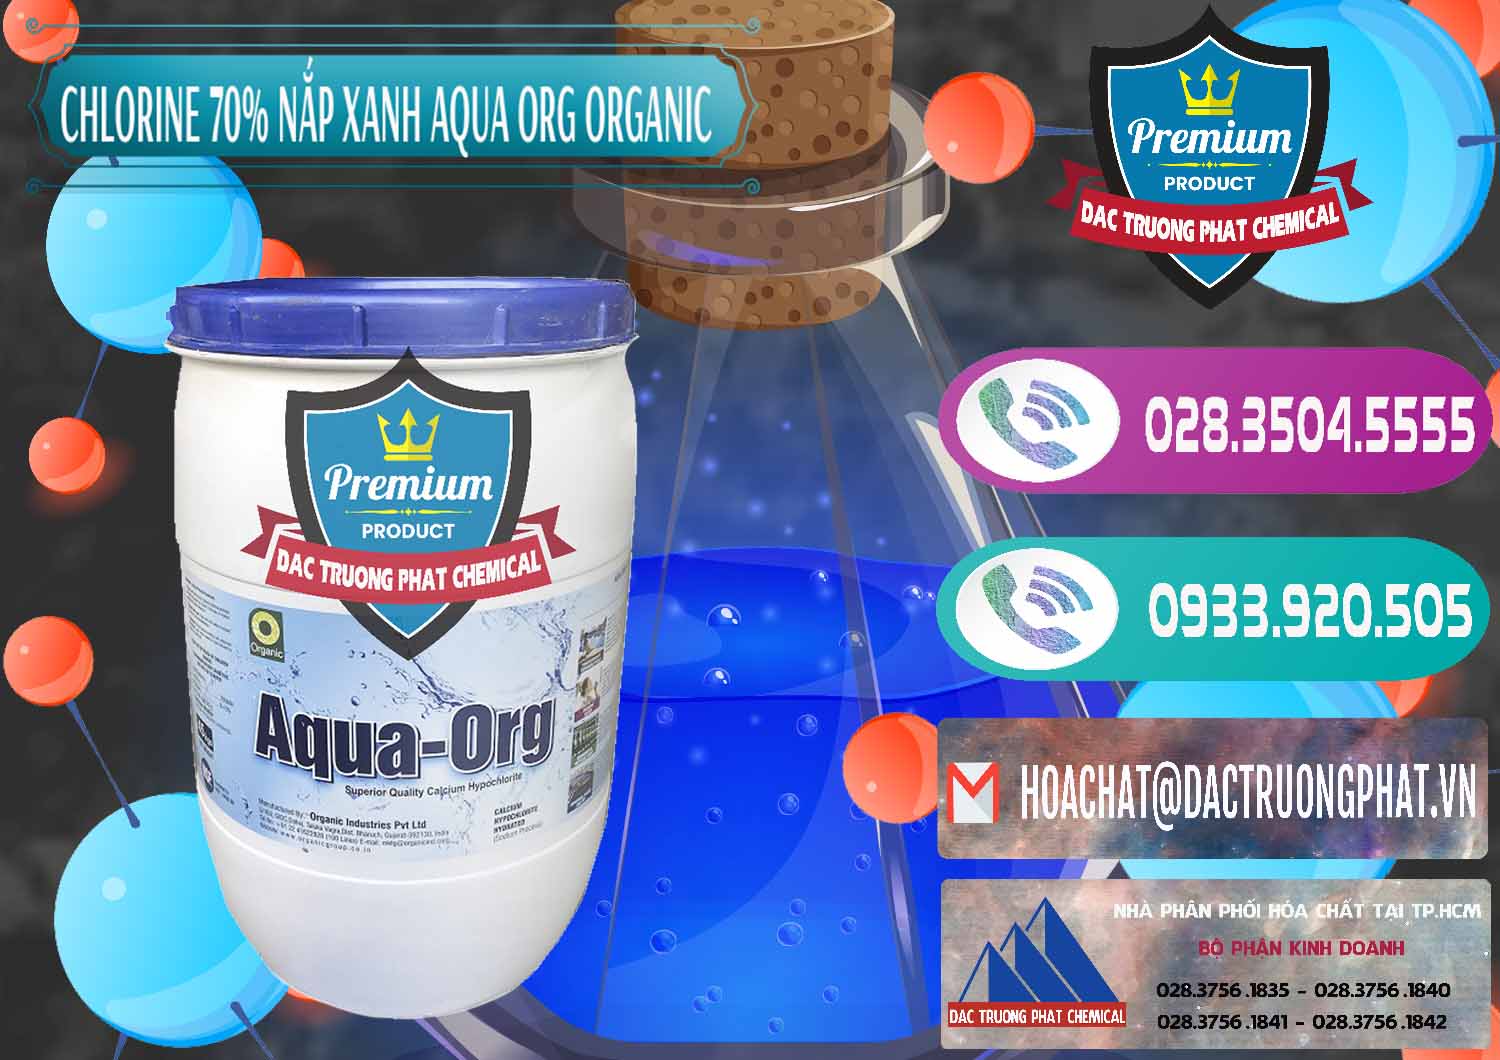 Cty chuyên cung cấp và bán Chlorine – Clorin 70% Thùng Tròn Nắp Xanh Aqua ORG Organic Ấn Độ India - 0247 - Cty chuyên bán _ cung cấp hóa chất tại TP.HCM - hoachatxulynuoc.com